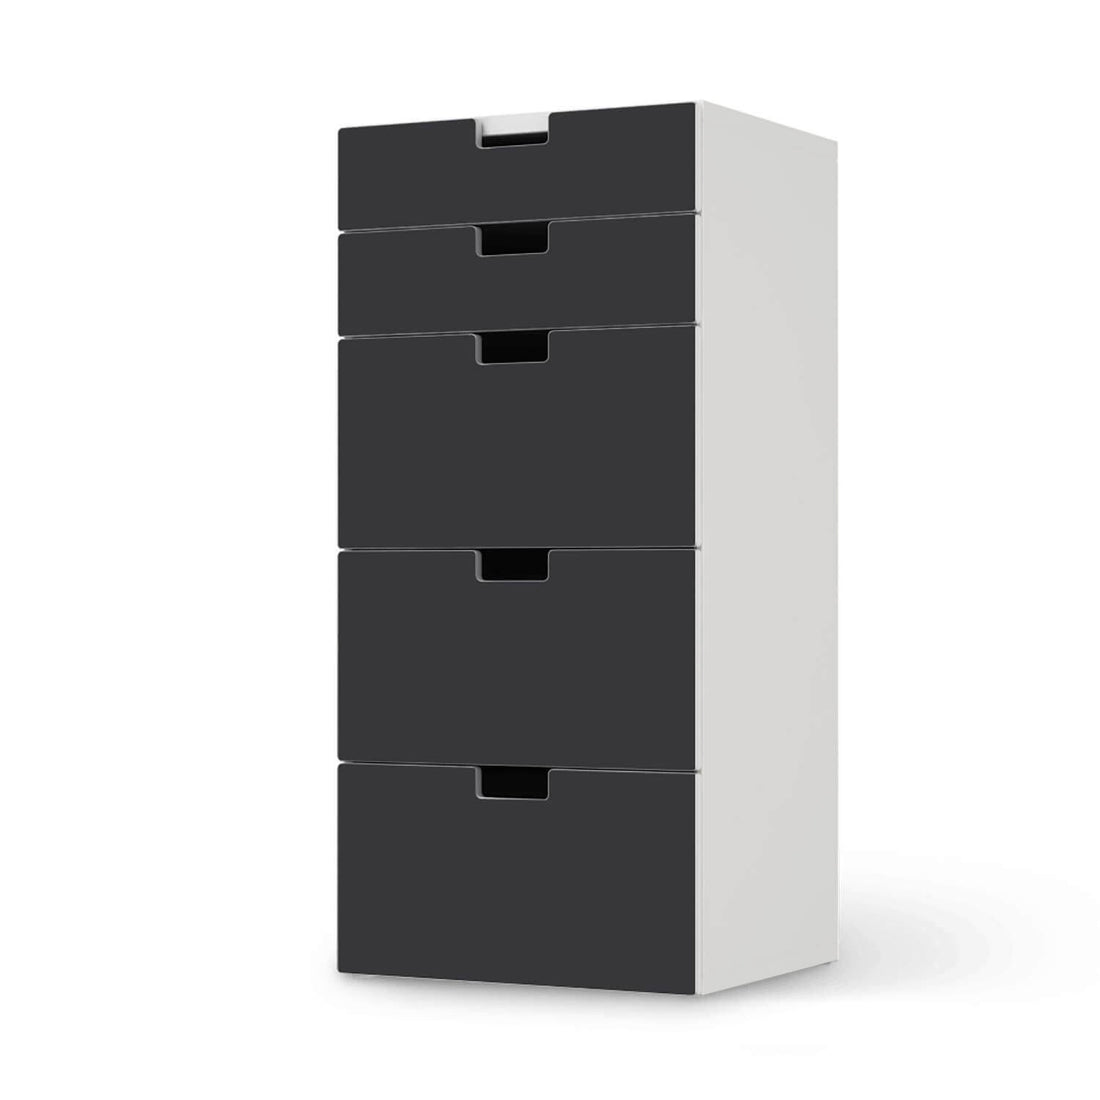 Möbel Klebefolie Grau Dark - IKEA Stuva Kommode - 5 Schubladen  - weiss